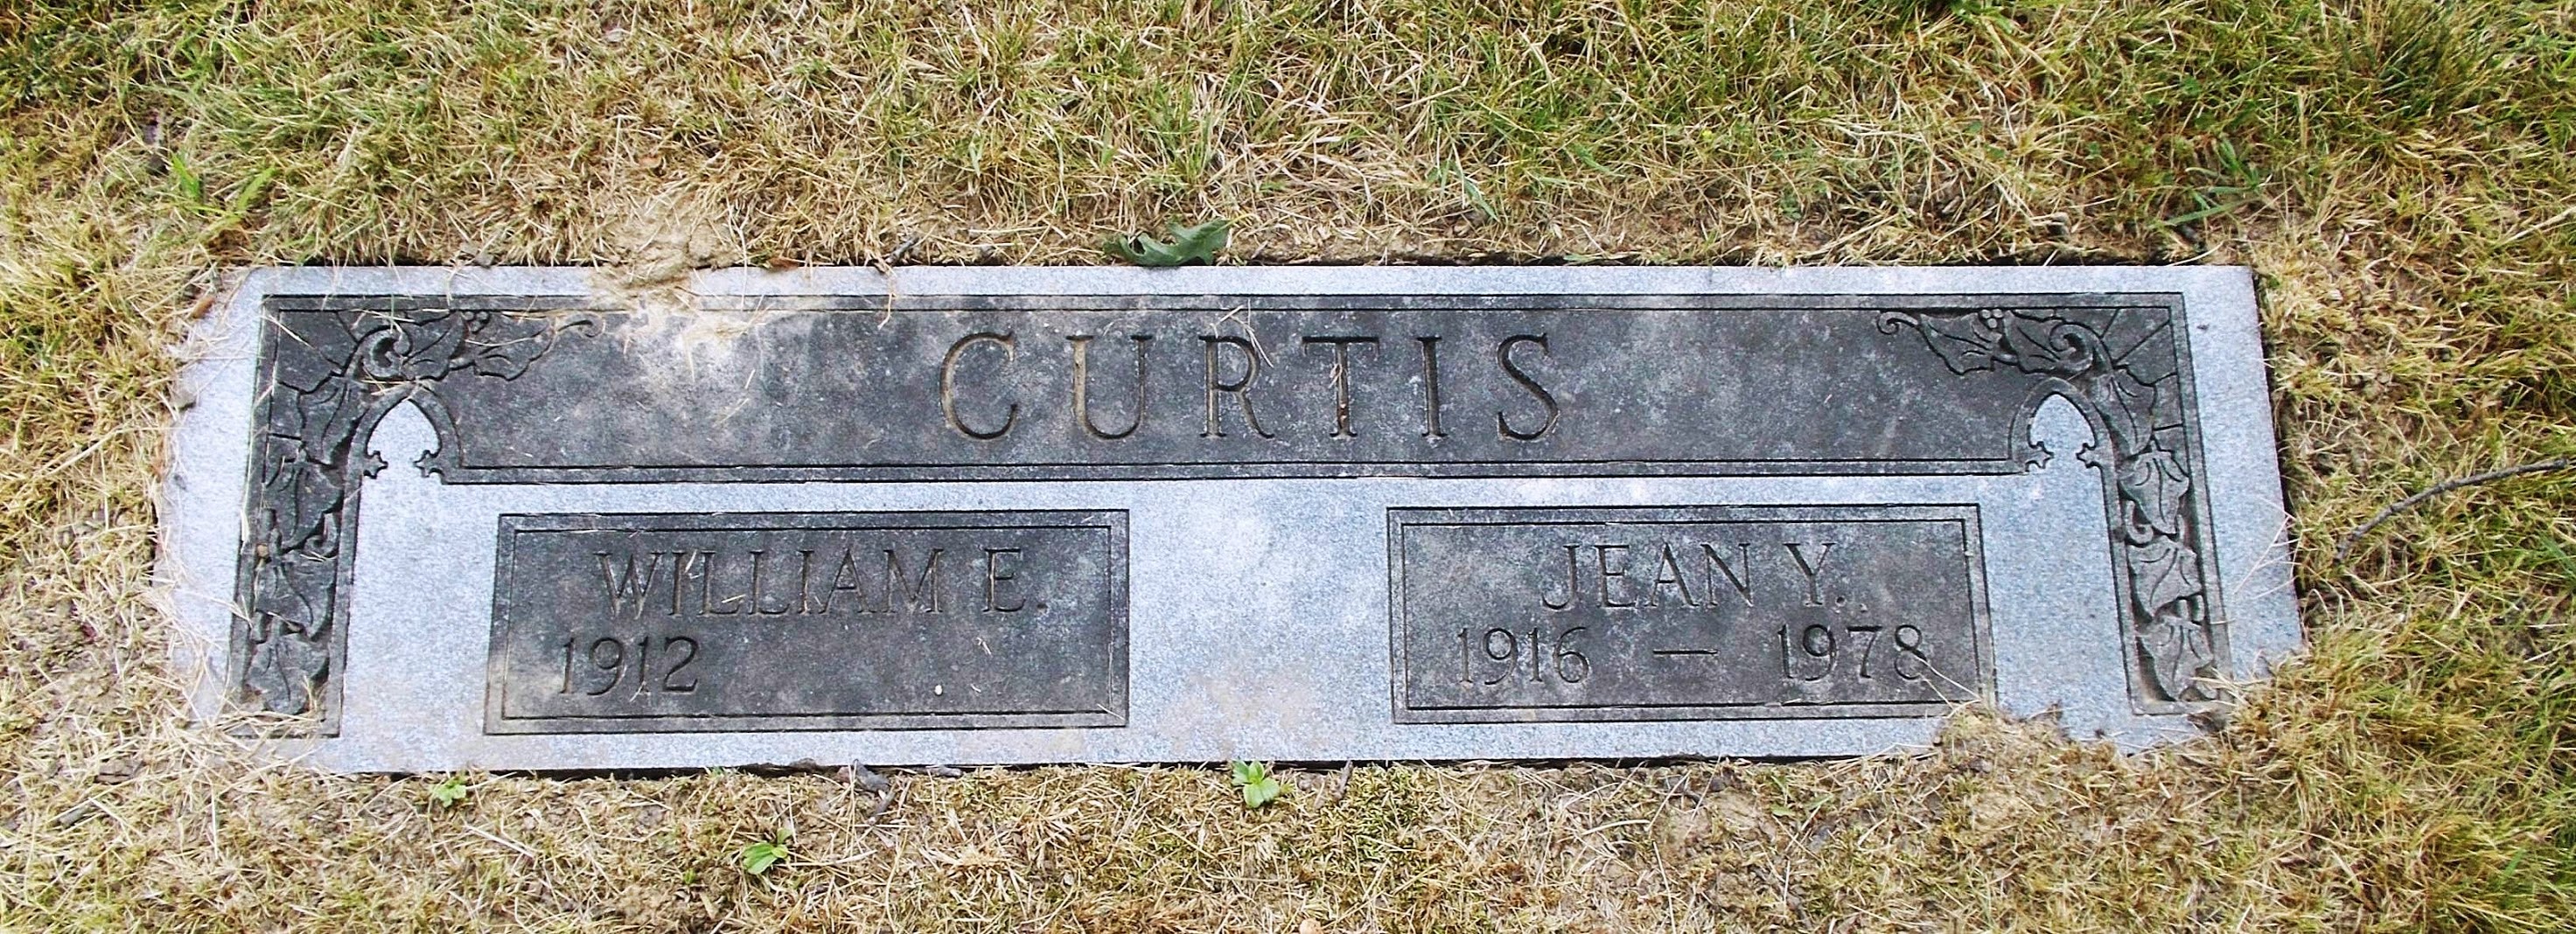 William E Curtis